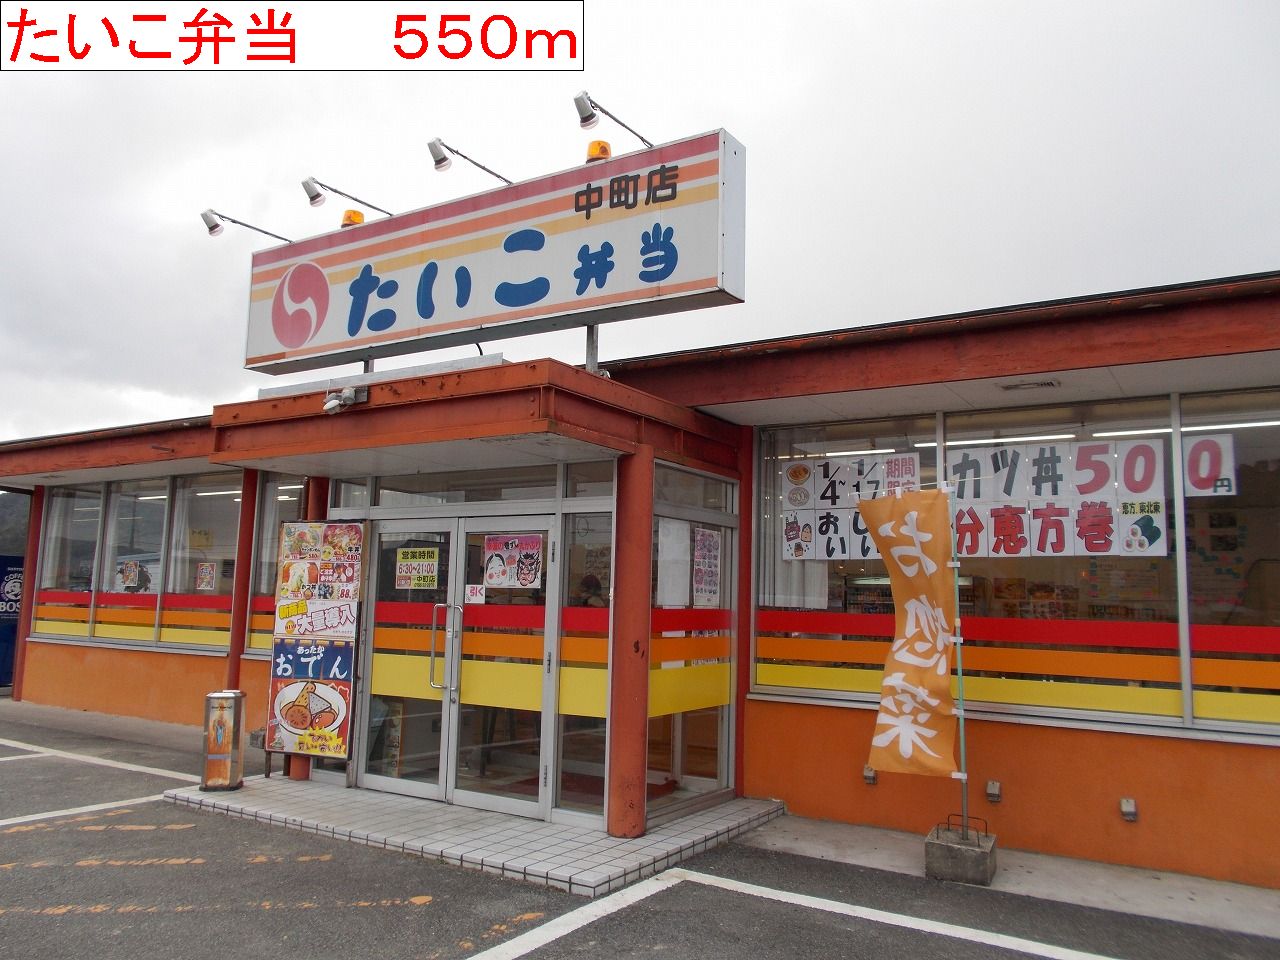 restaurant. Taiko lunch 550m to Nakamachi store (restaurant)